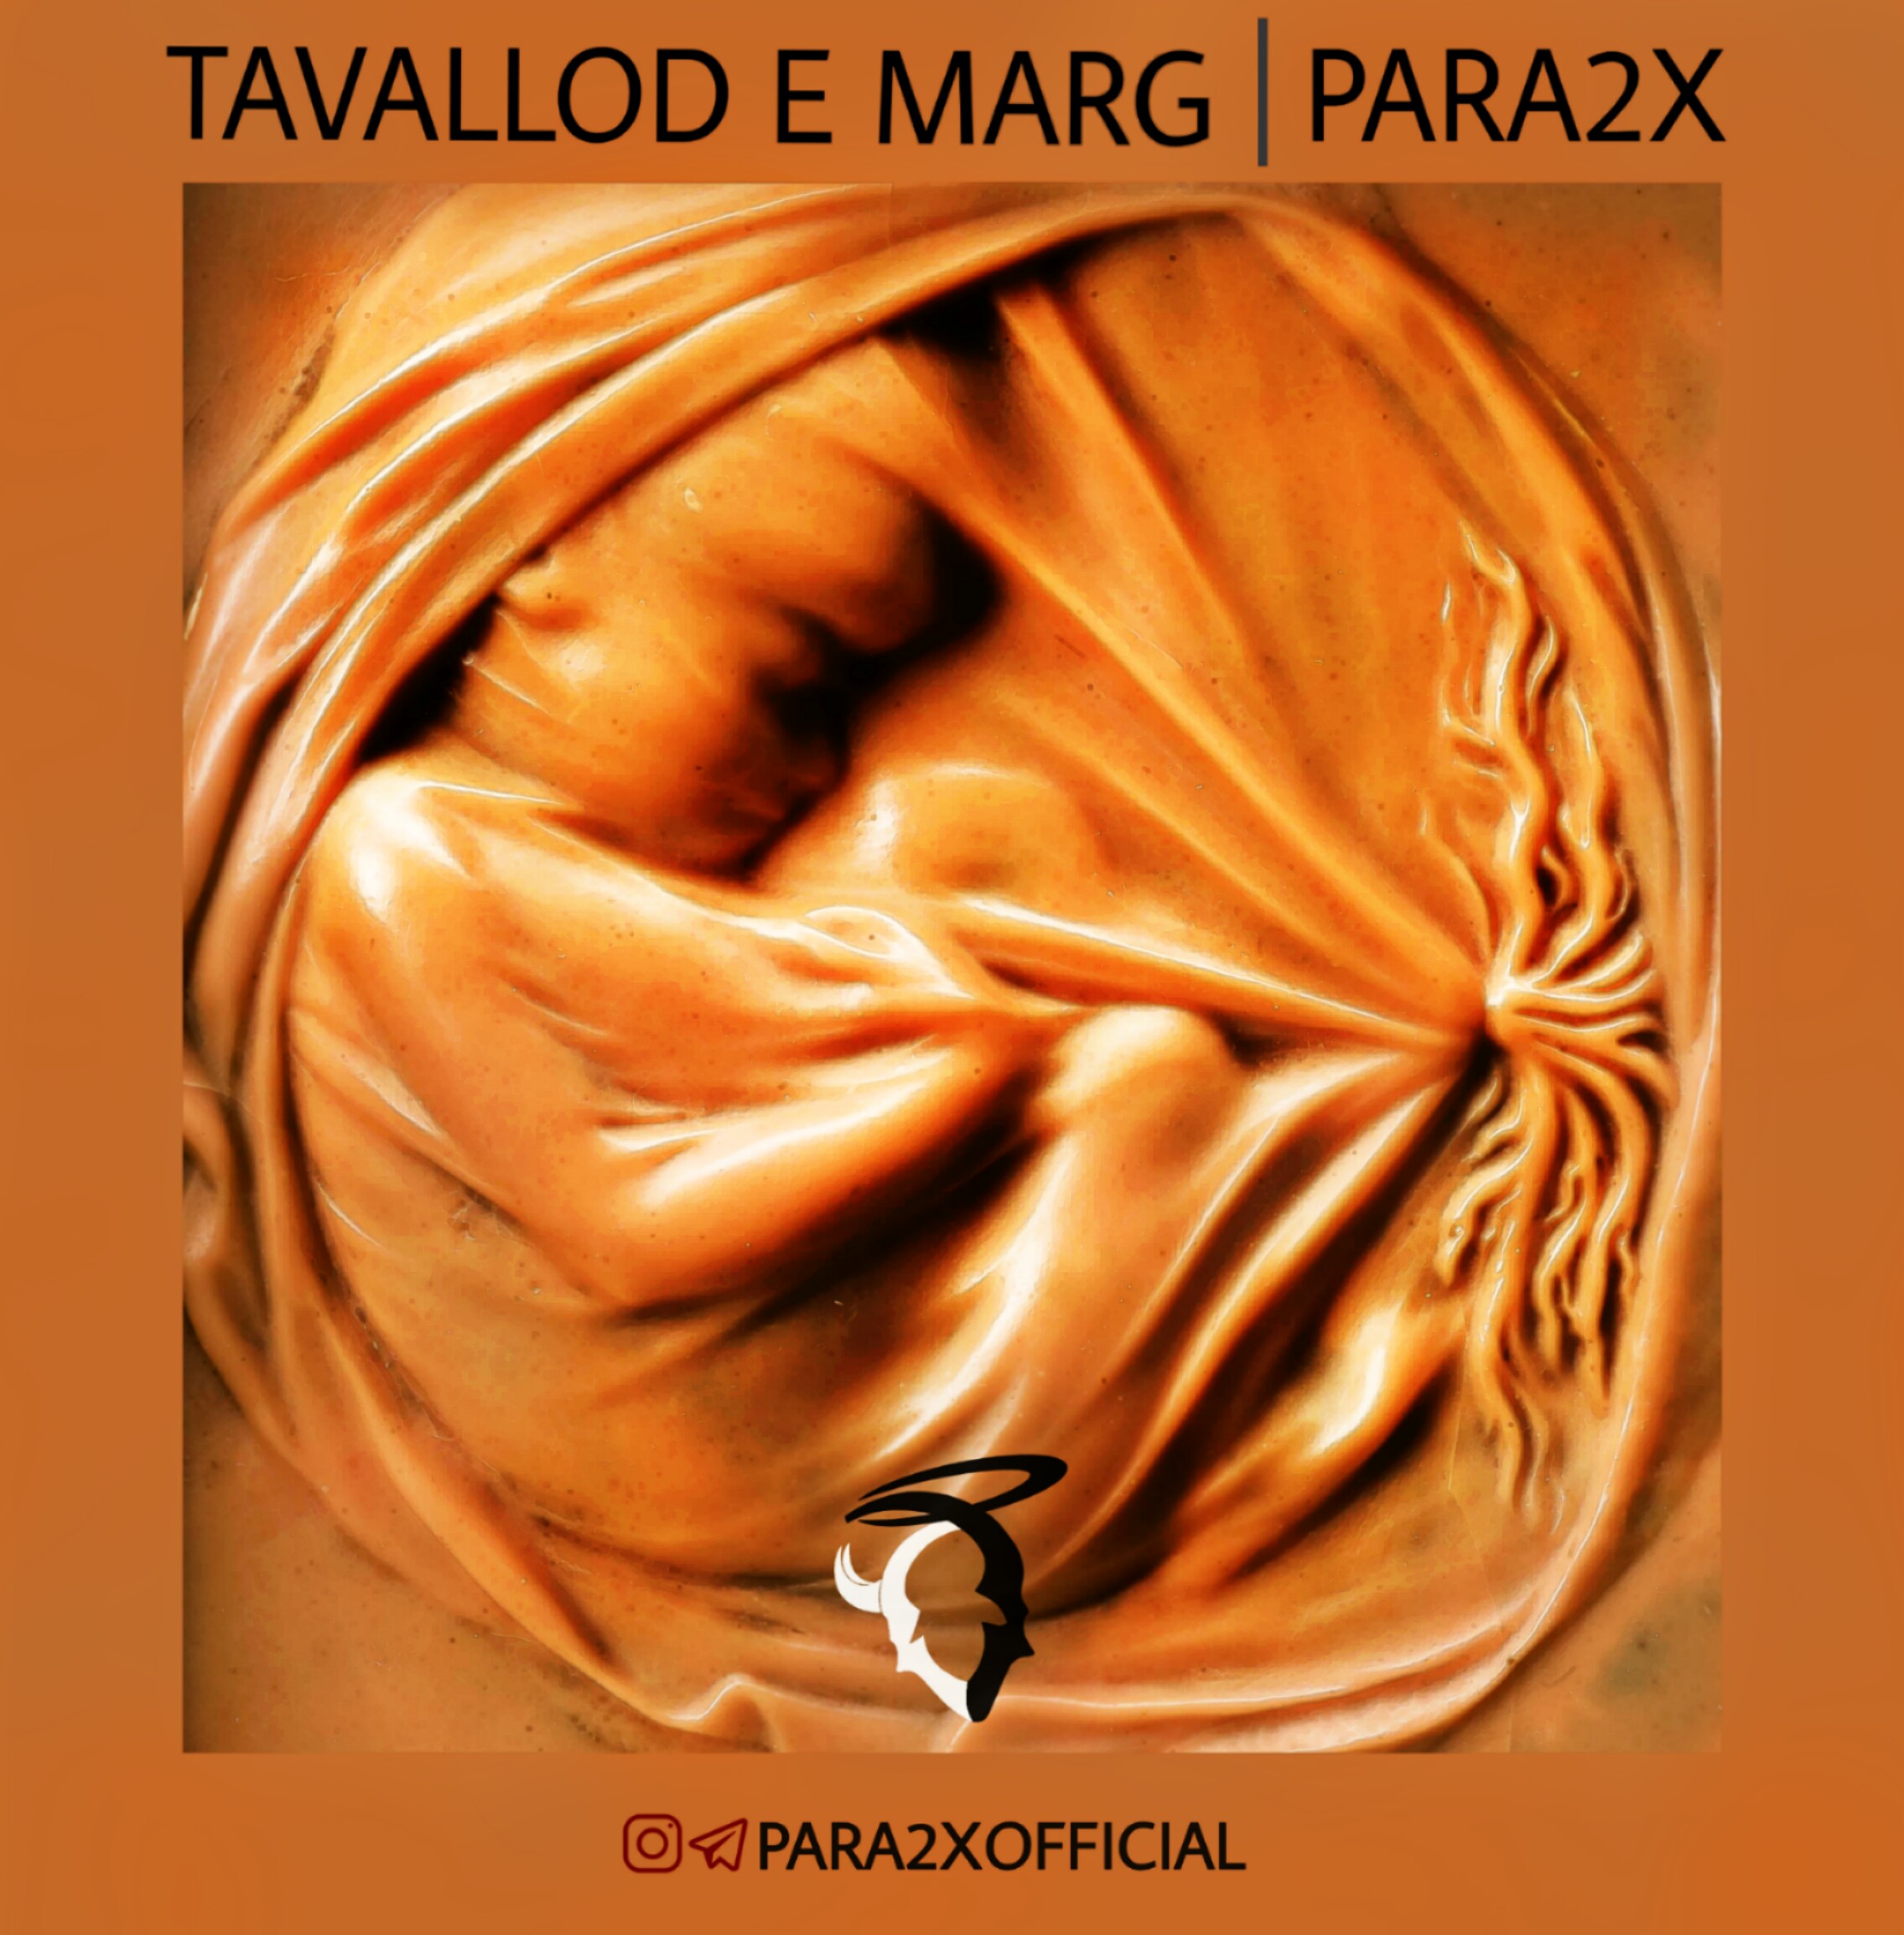  دانلود آهنگ جدید پارادوکس - تولد مرگ | Download New Music By Para2x - Tavallod E Marg